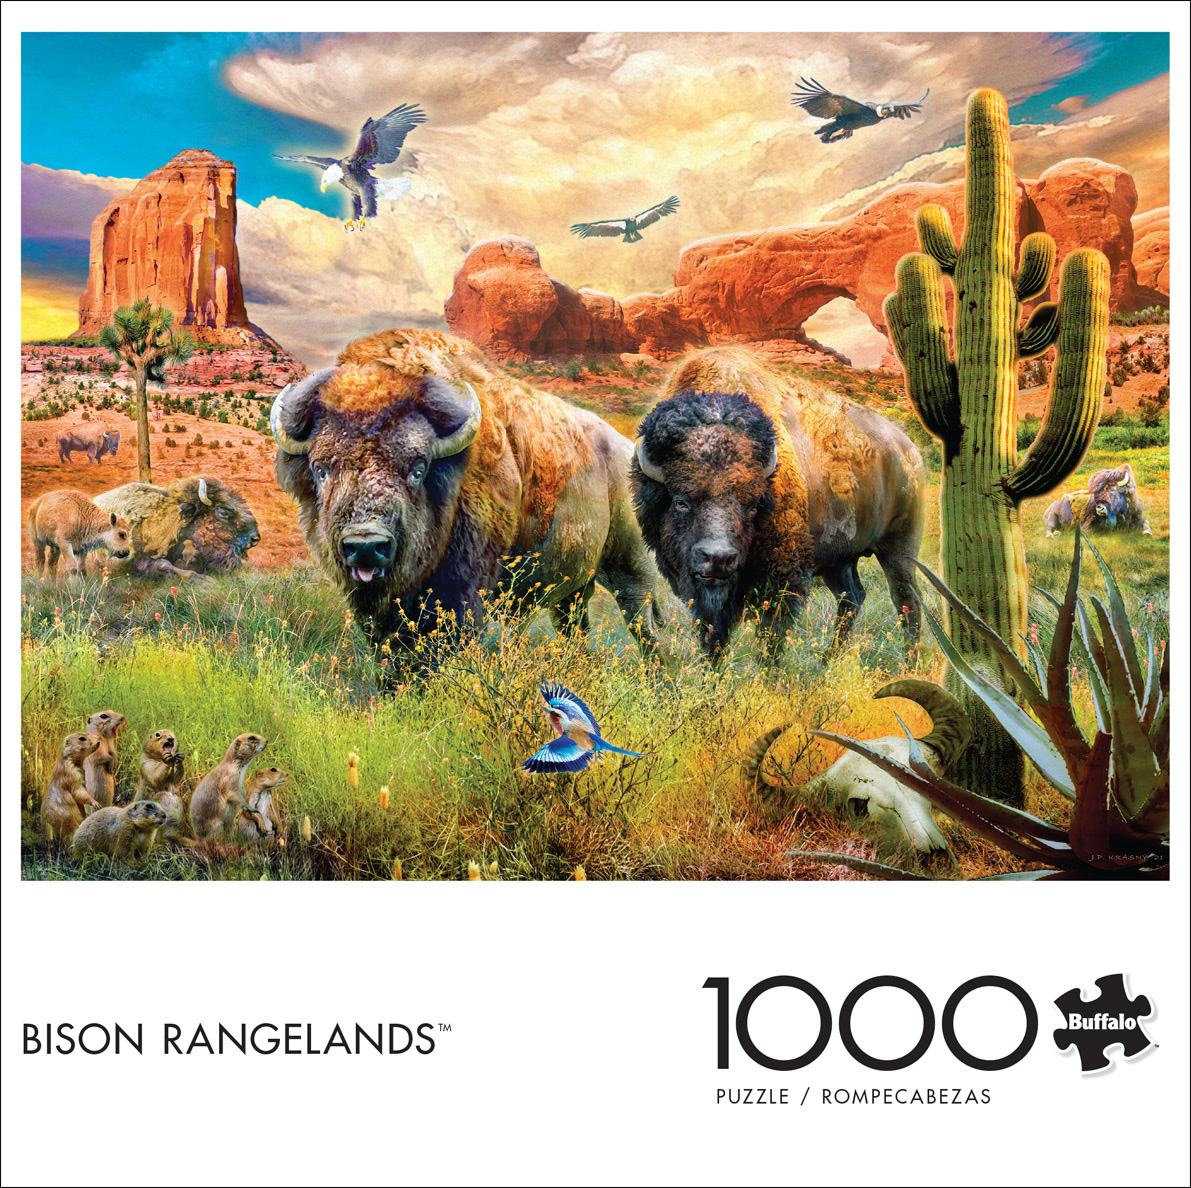 Bison Rangelands